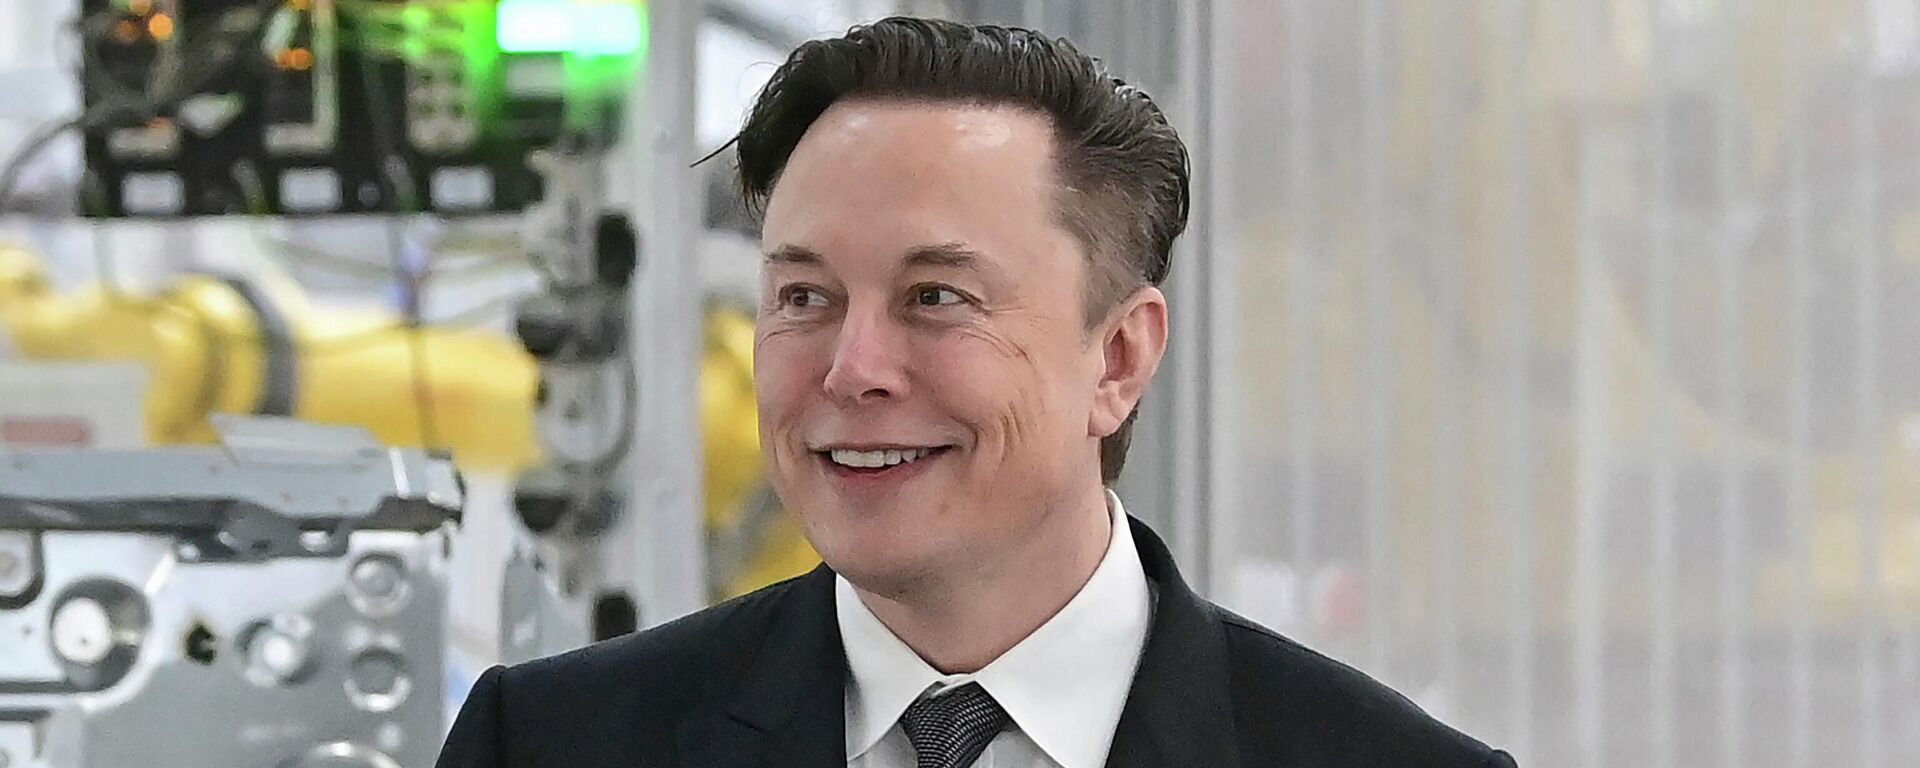 Tesla CEO Elon Musk attends the opening of the Tesla factory Berlin Brandenburg in Gruenheide, Germany, March 22, 2022. - Sputnik International, 1920, 27.12.2022